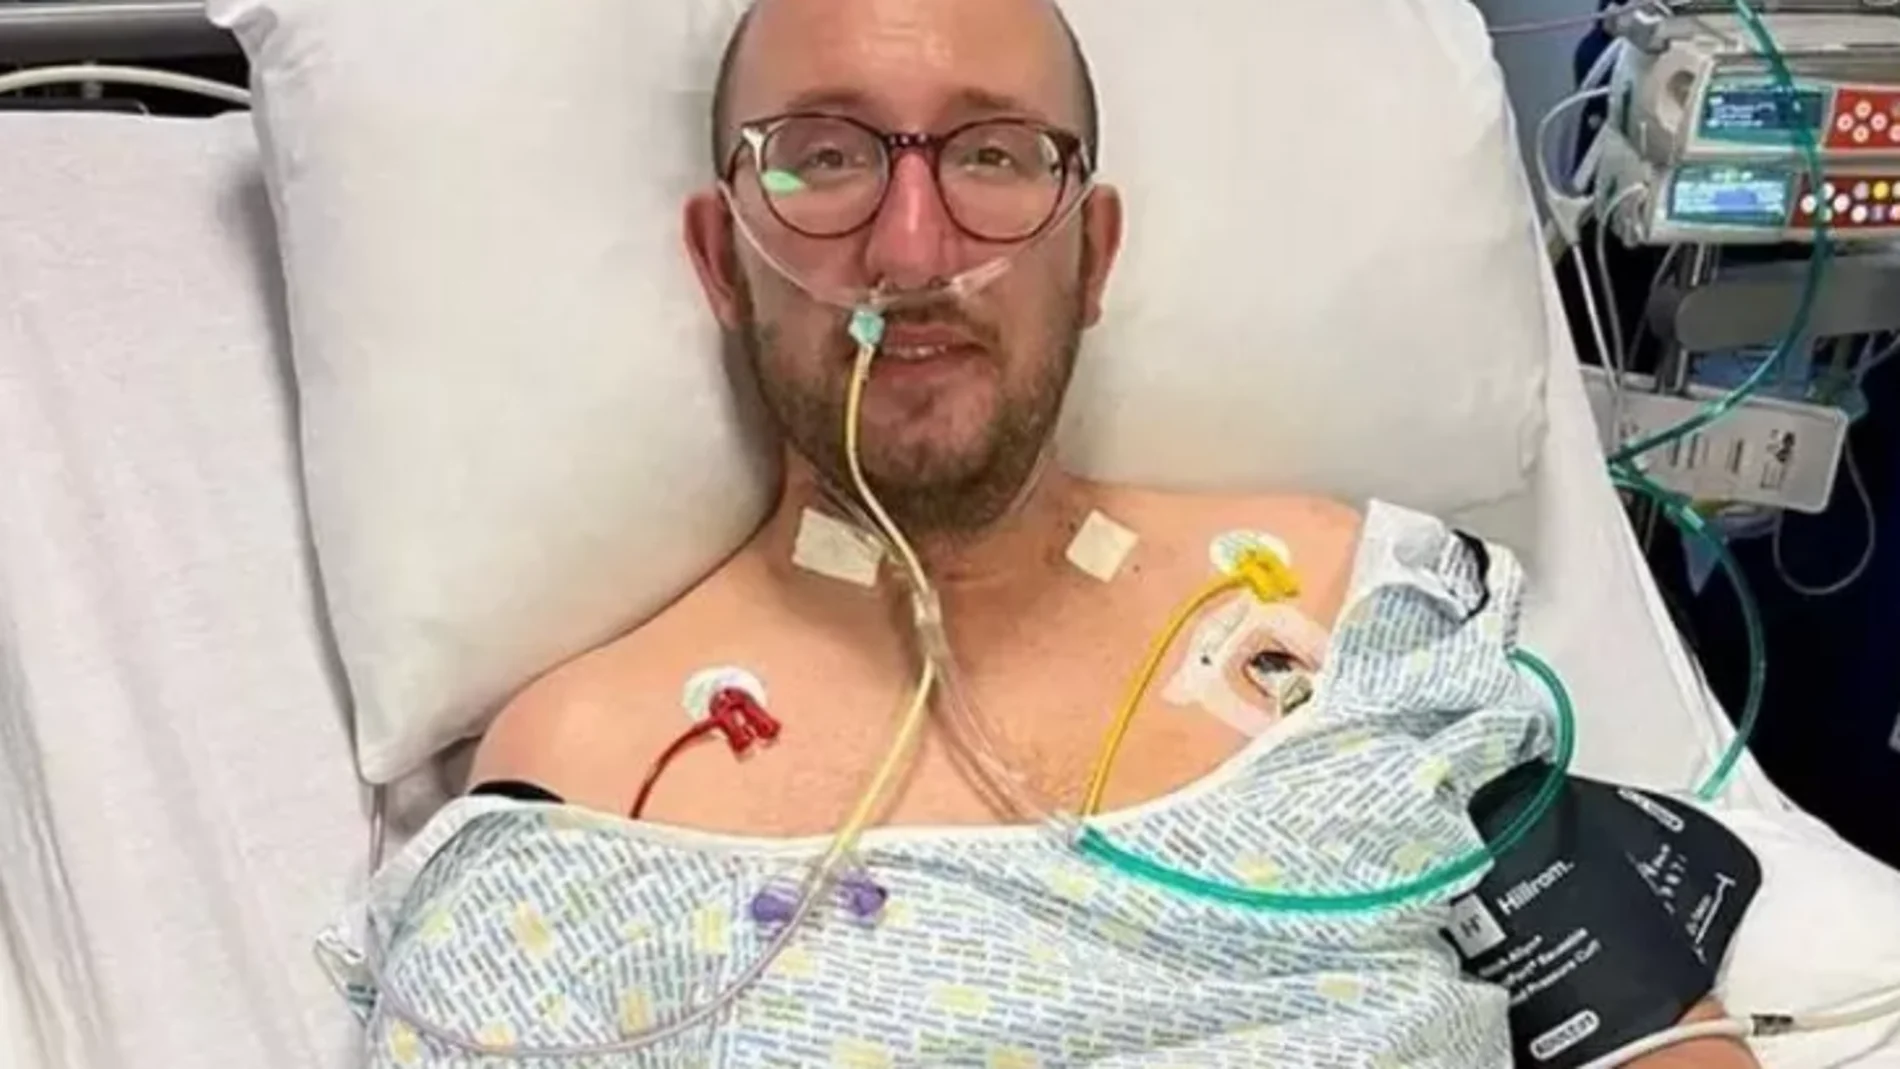 Le amputan las piernas tras acudir al hospital por un aparente constipado: permaneció tres meses ingresado y dos semanas en coma